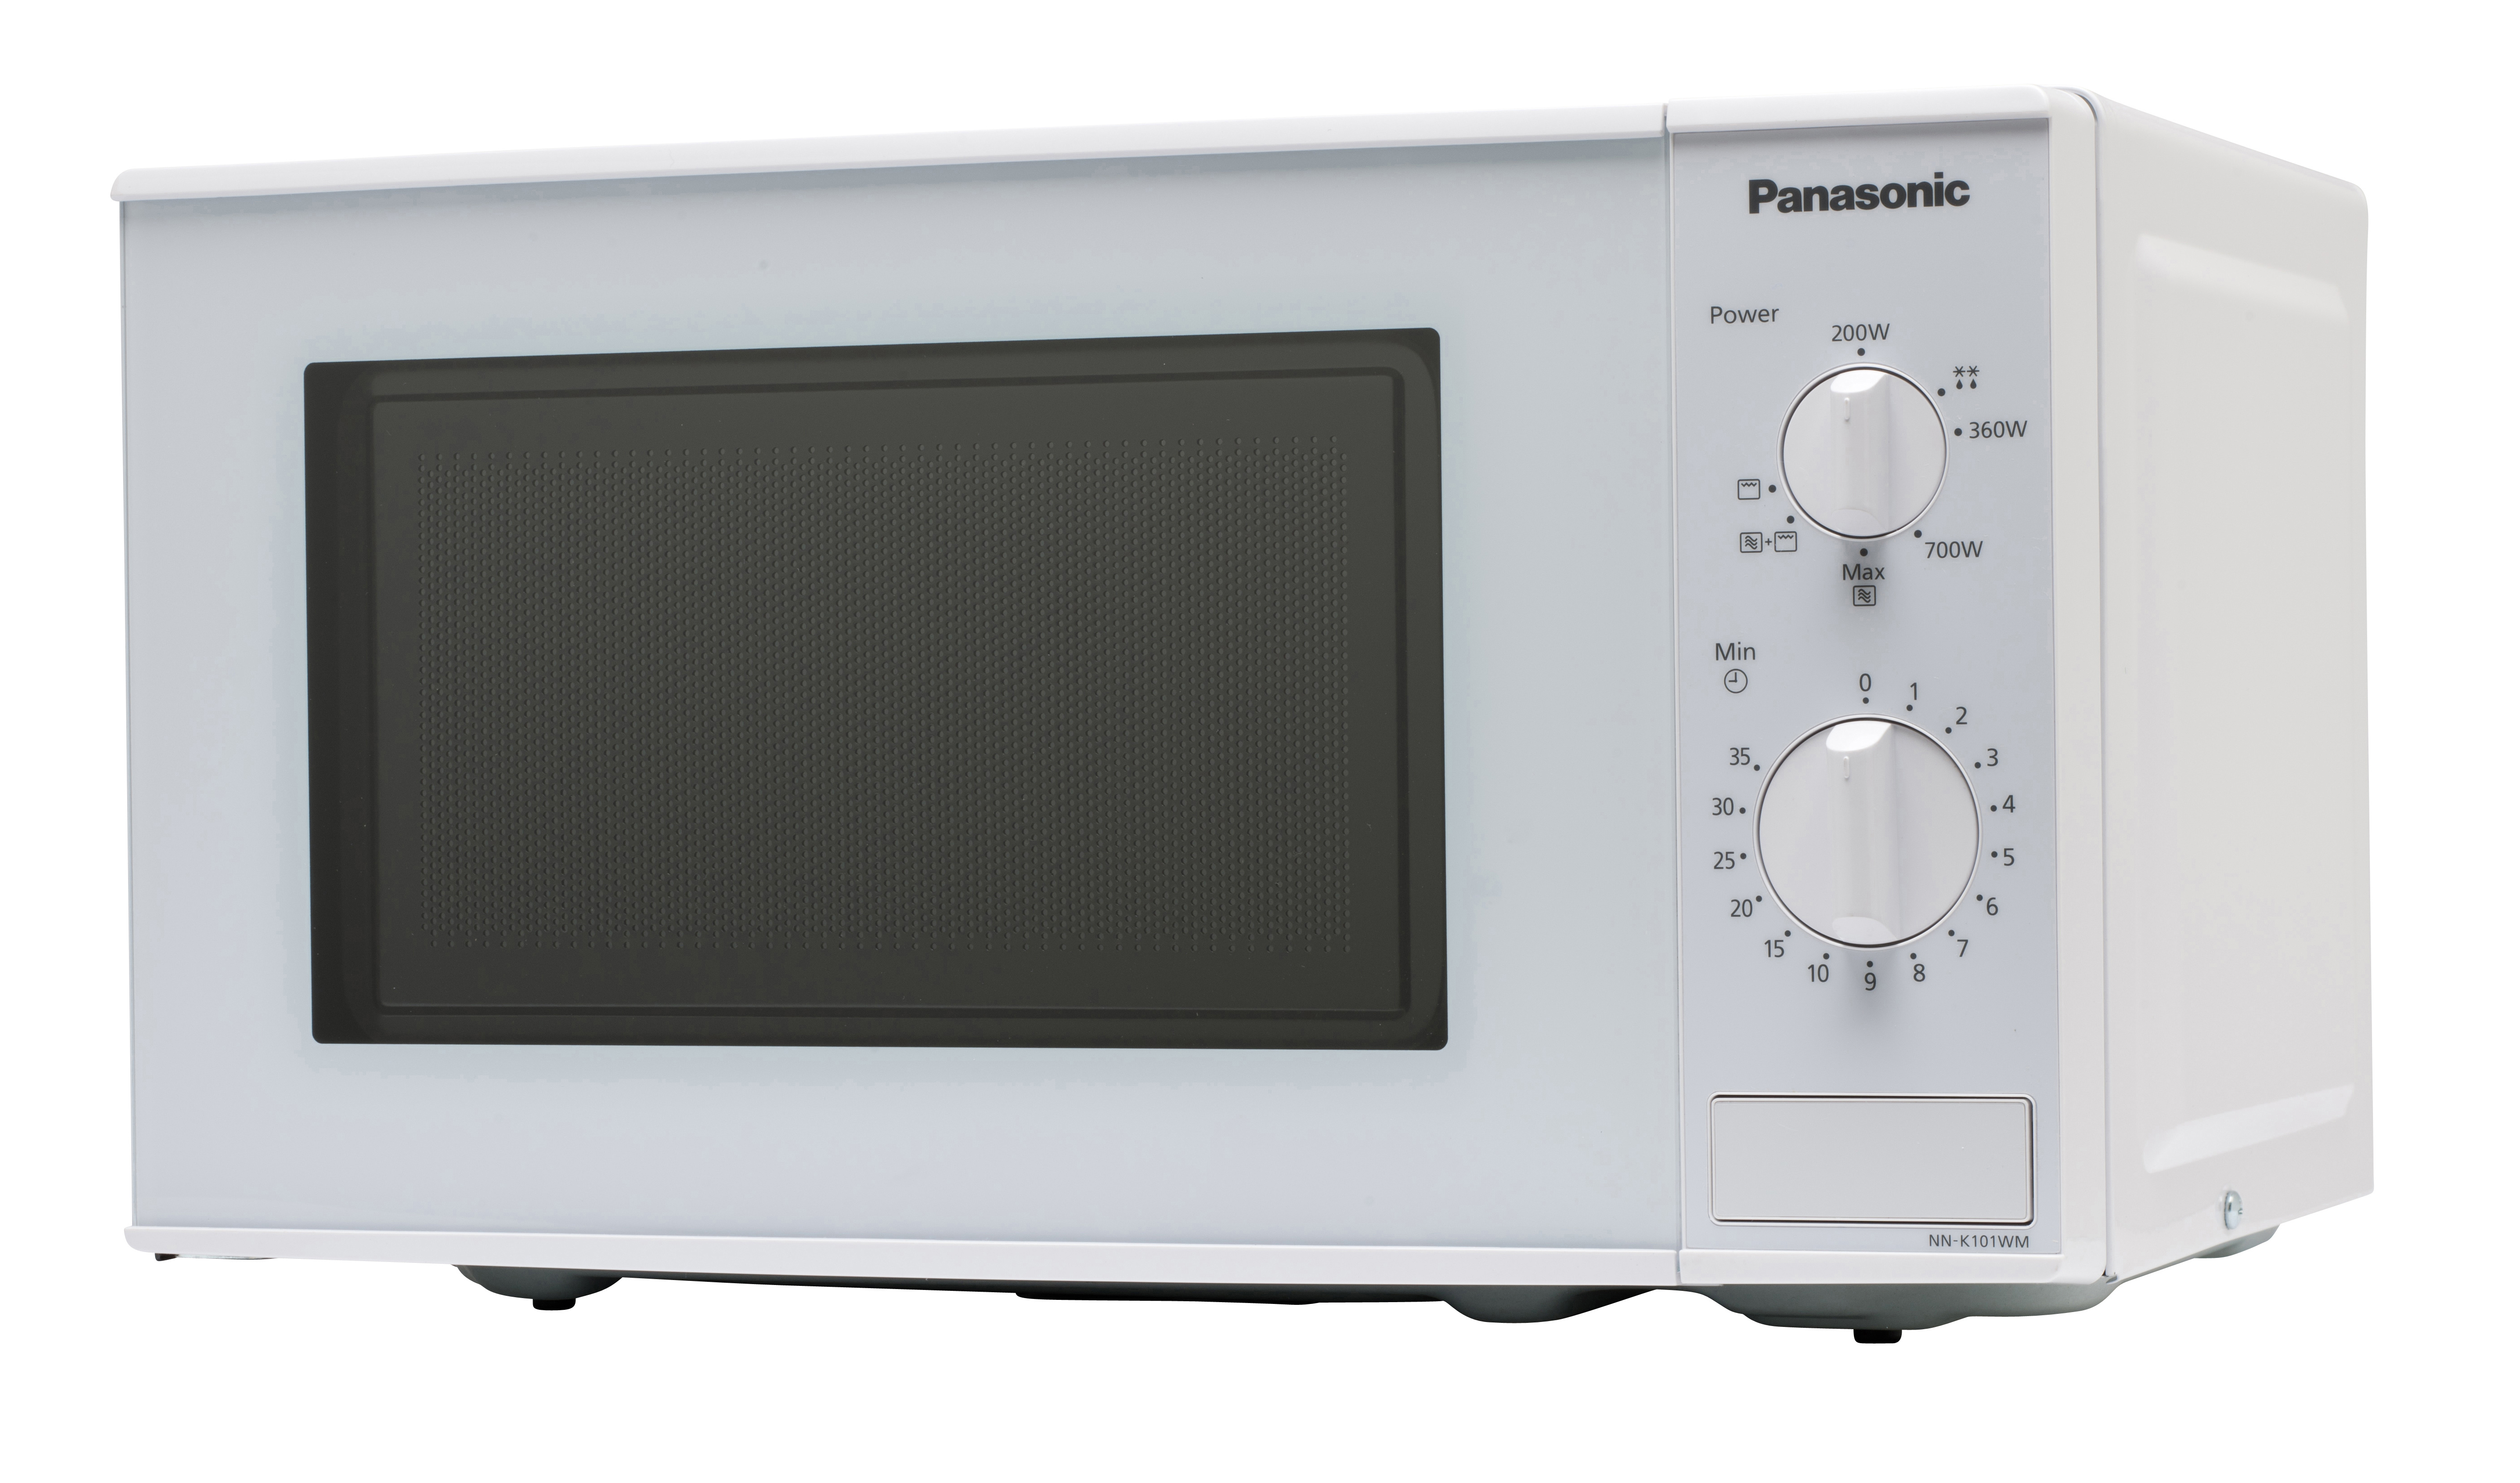 PANASONIC Grillfunktion) NN-K101W, (800 Mikrowelle Watt,